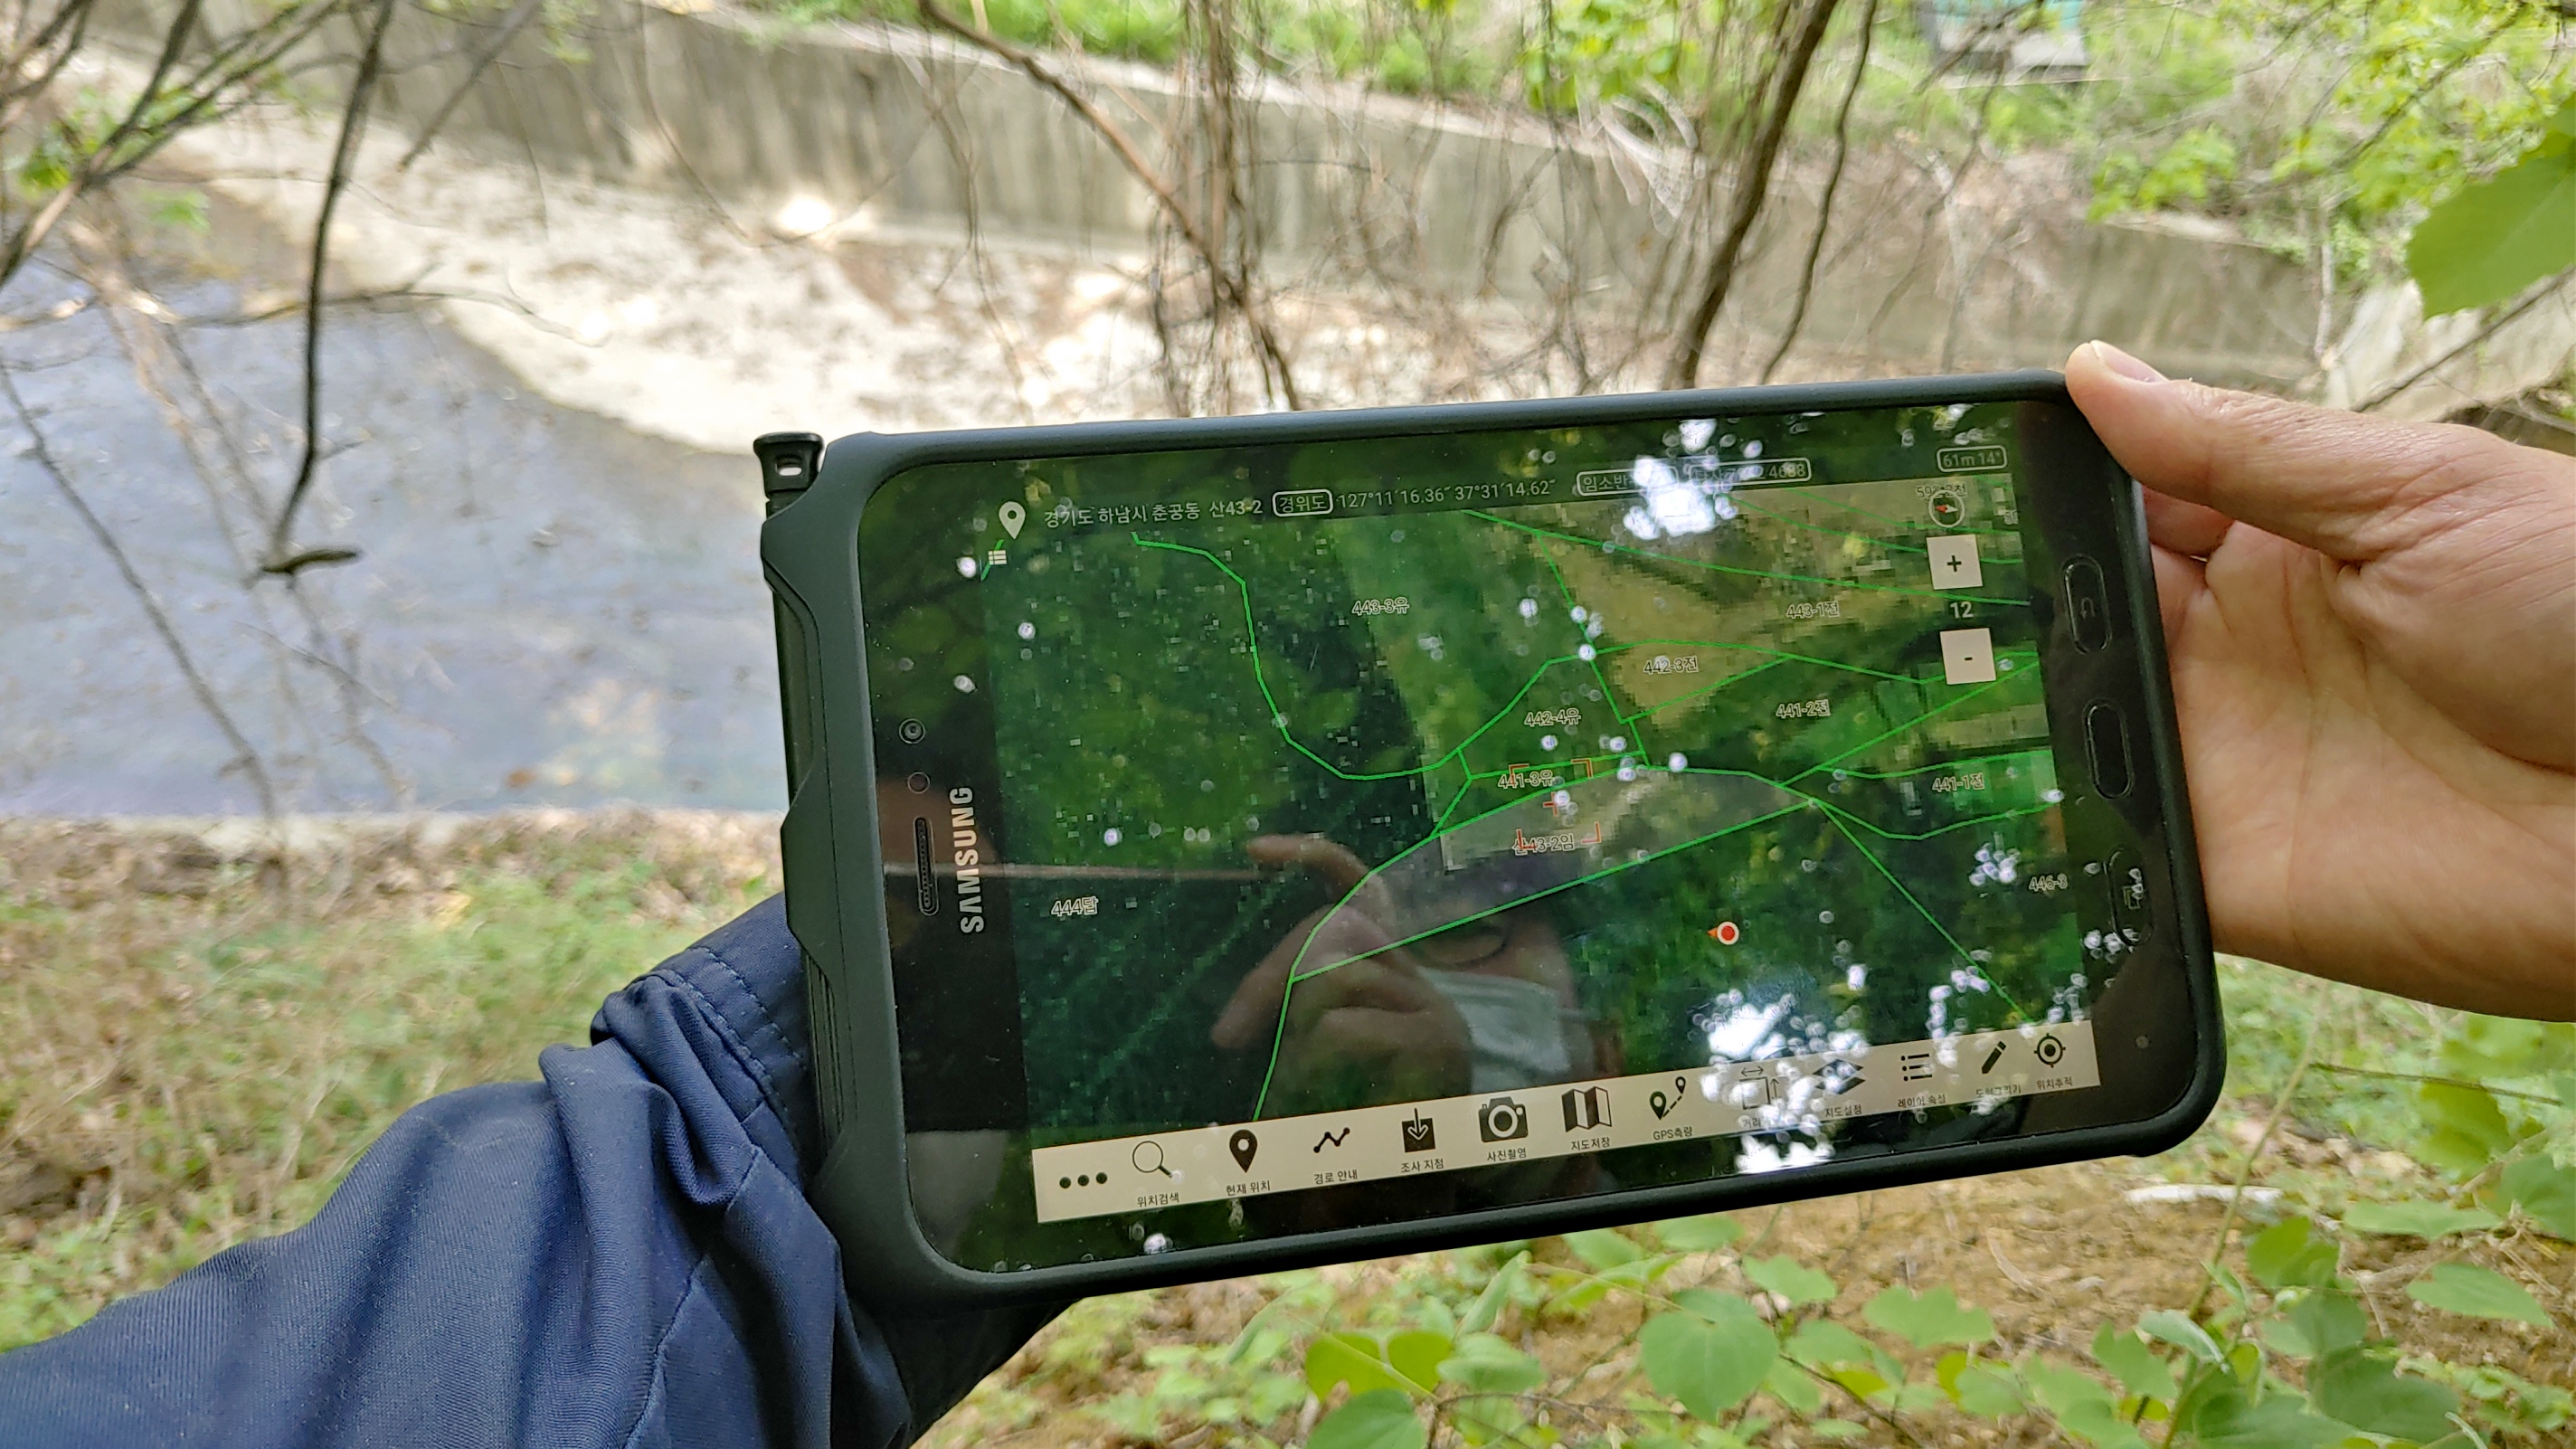 산림청 산림사범수사팀원들이 현장에서 탭을 이용해 GPS를 통한 위치와 지번경계 등을 확인하고 있다. 북부지방산림청 제공